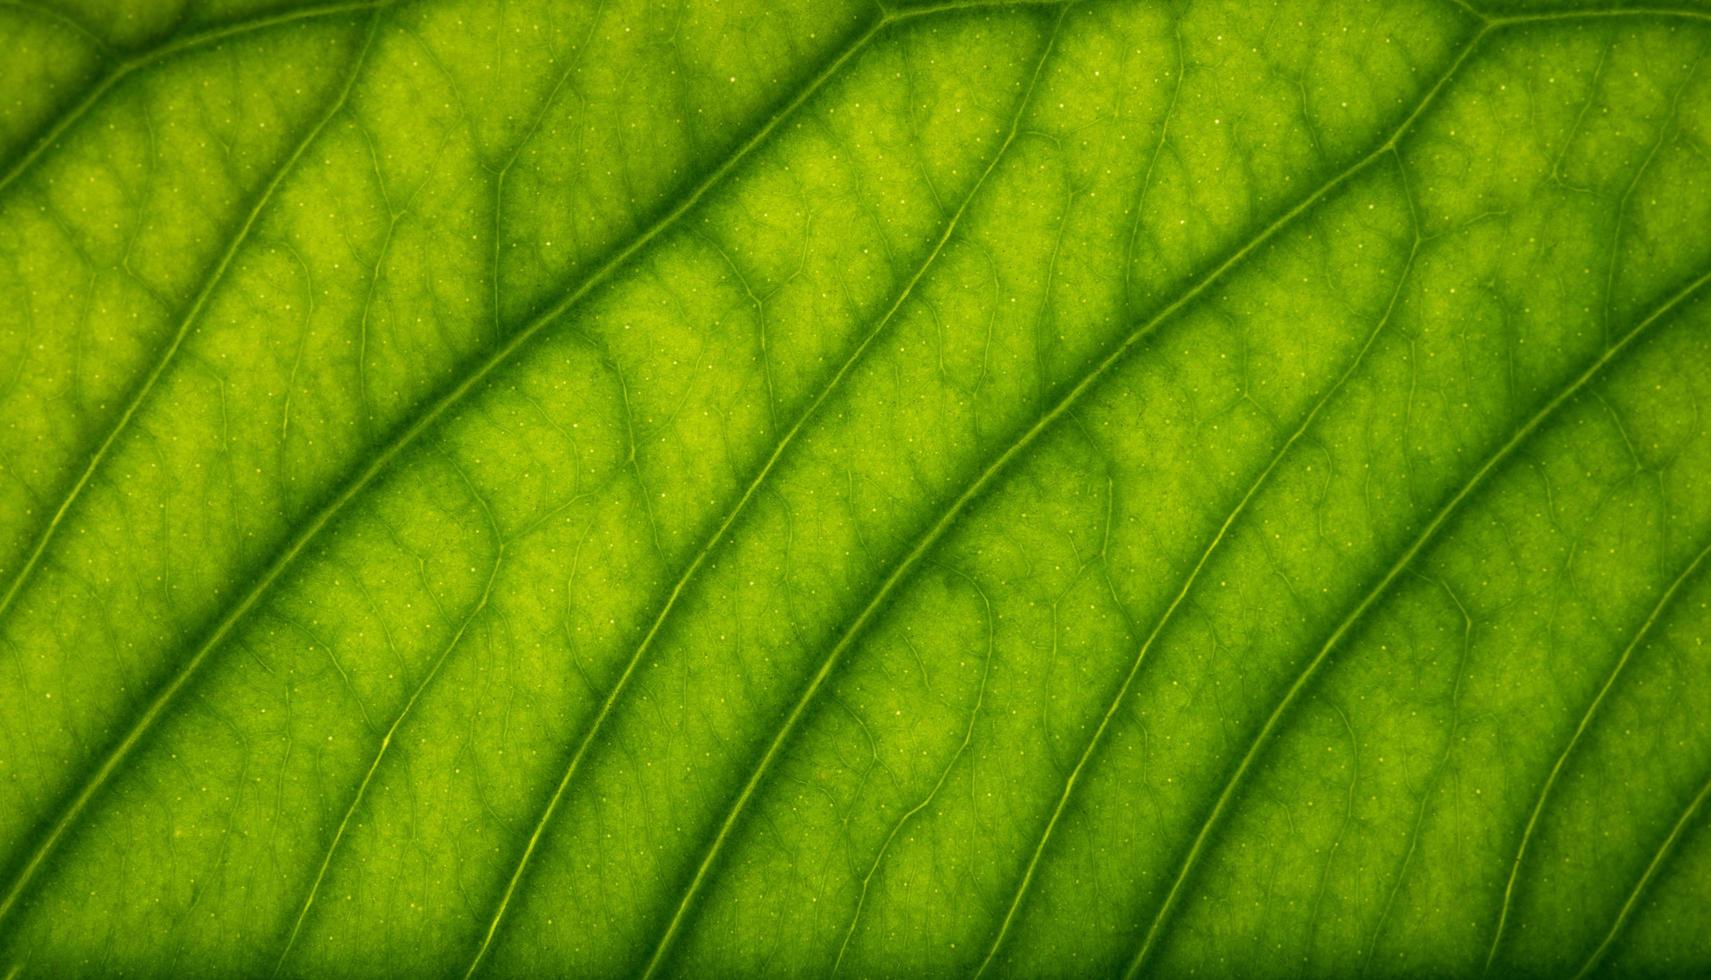 Brown leaf pattern photo